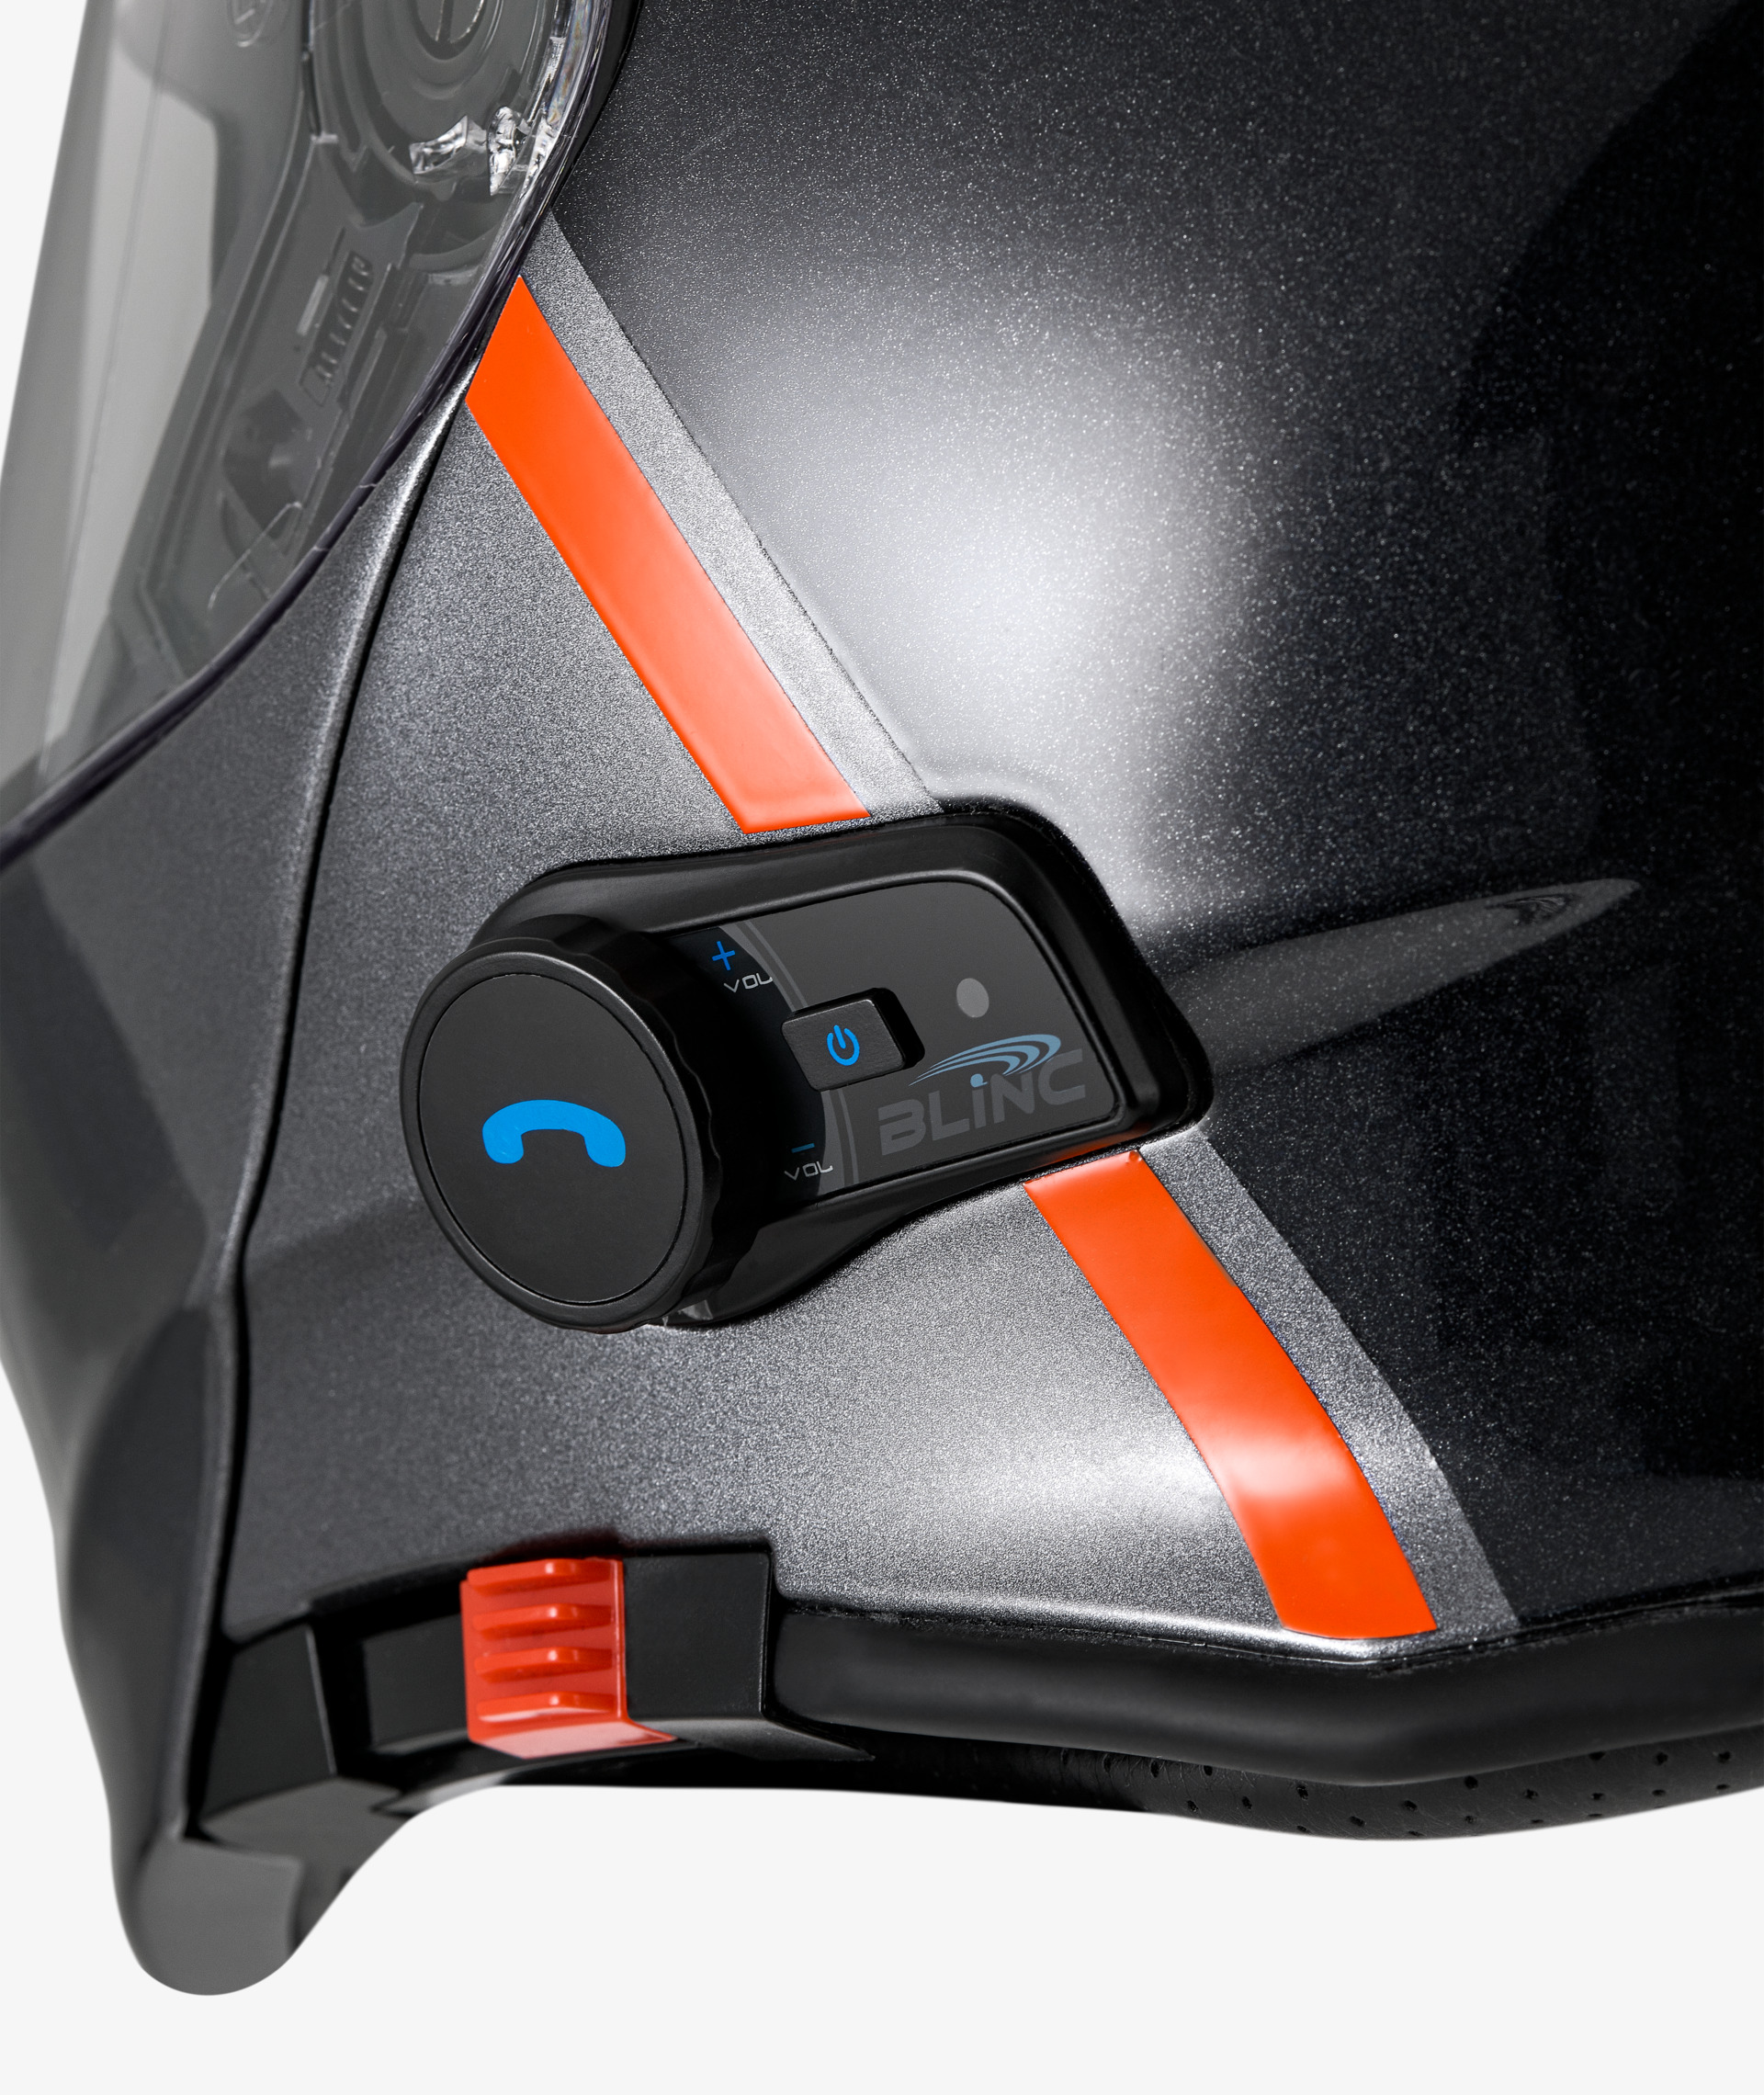 Casque moto Bluetooth casque moto Bluetooth 4.2 in – Grandado